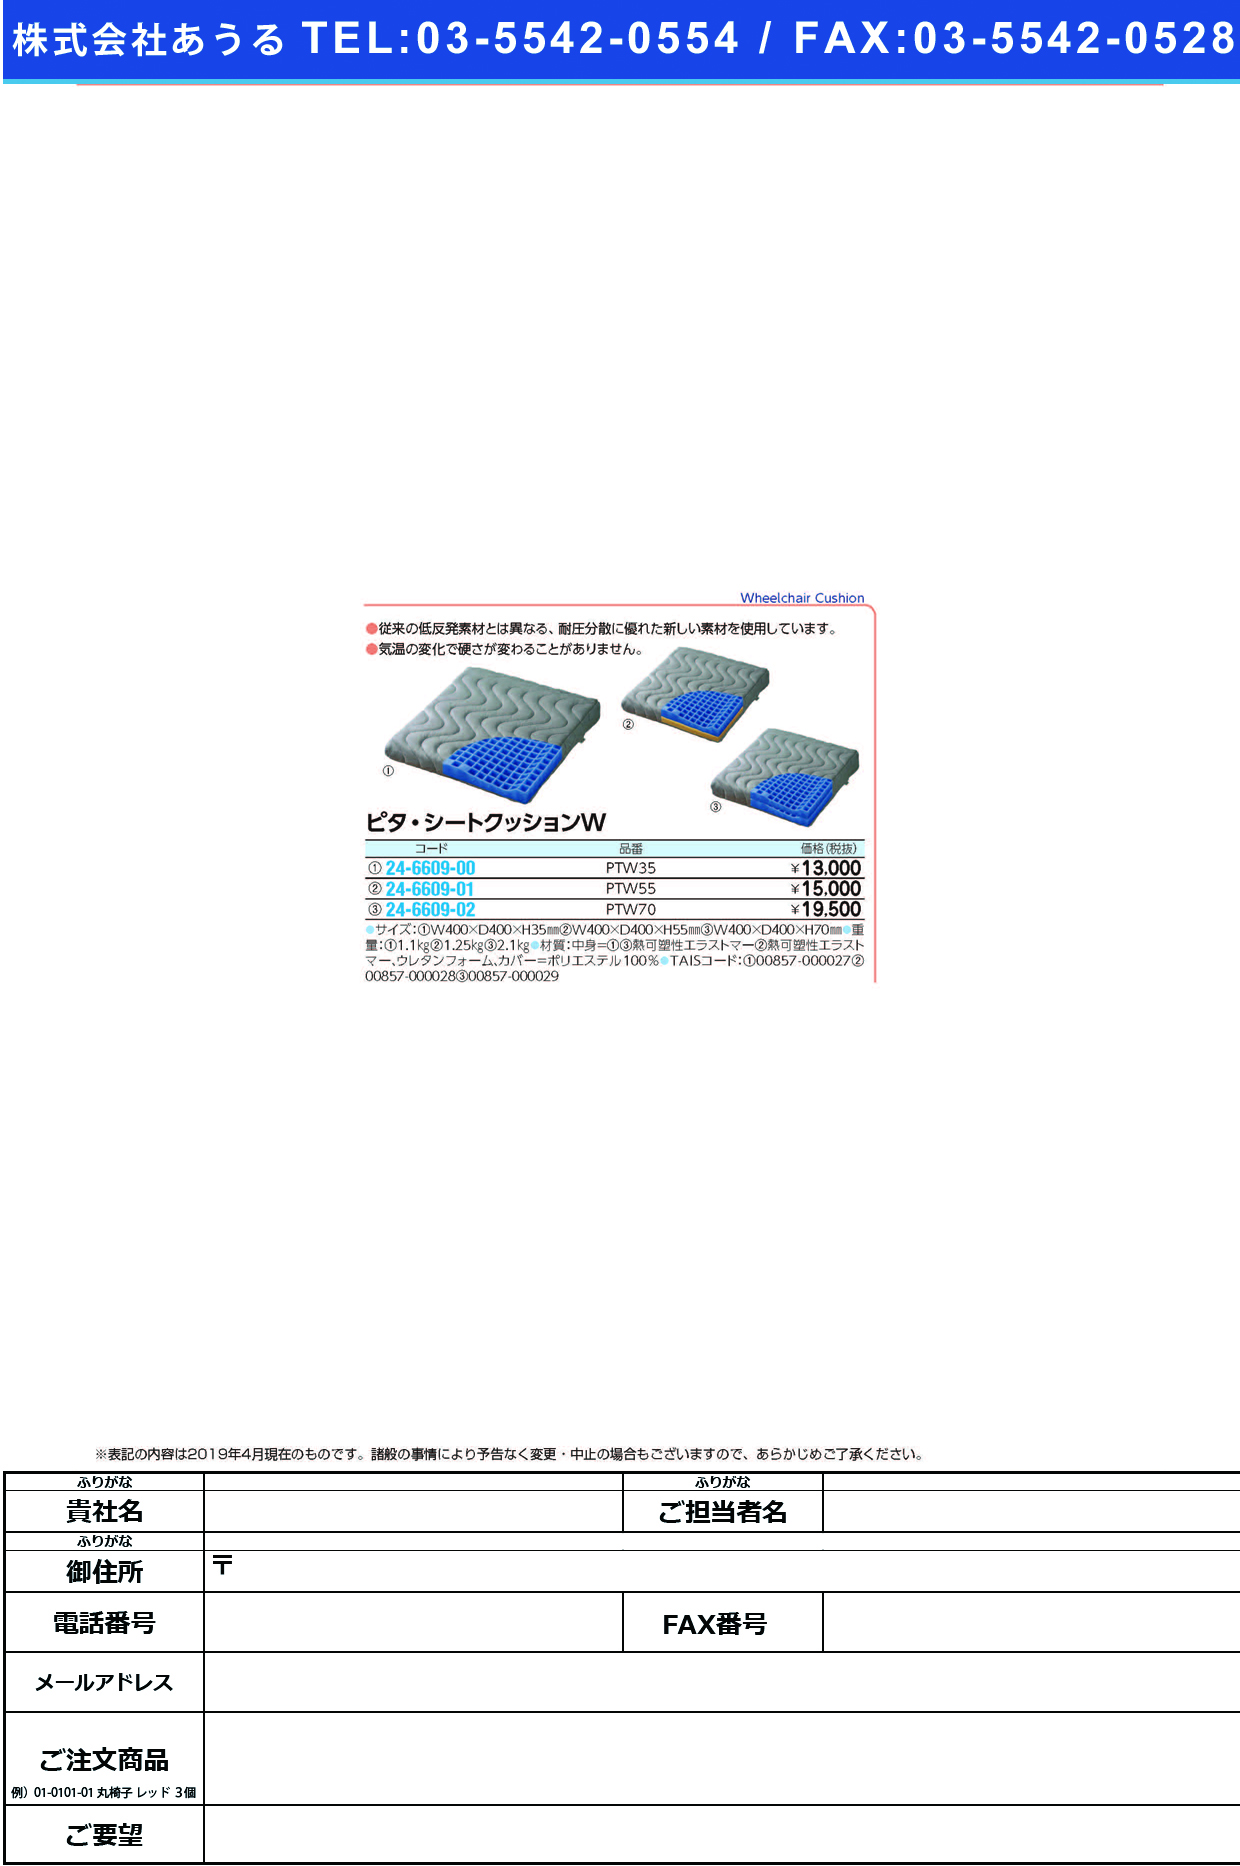 (24-6609-01)ピタ・シートクッションＷ PTW50(400X400X50MM) ﾋﾟﾀｼｰﾄｸｯｼｮﾝW(日本エンゼル)【1枚単位】【2019年カタログ商品】